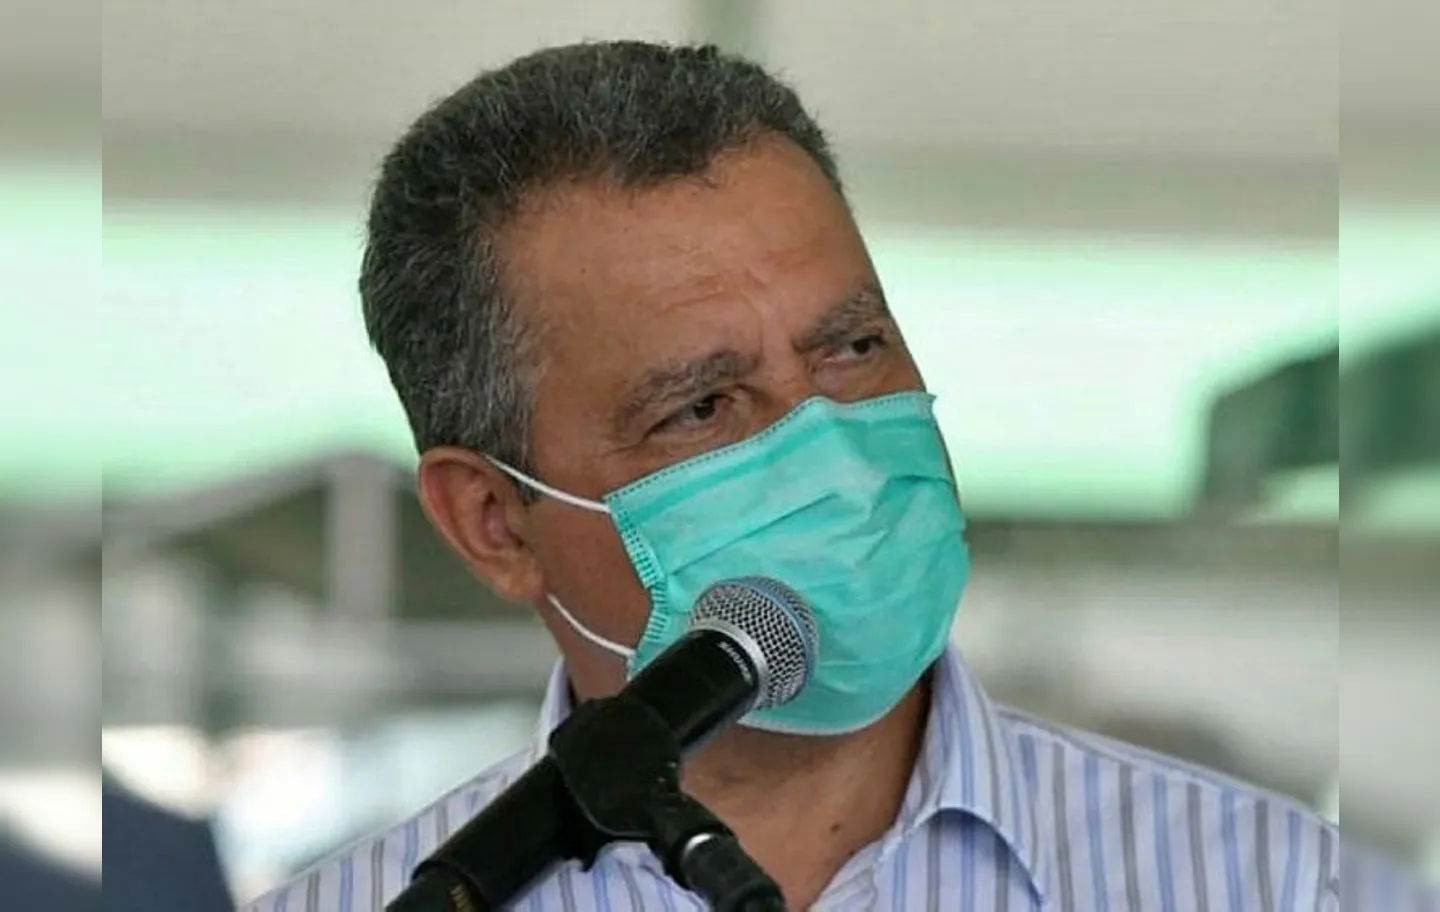 Apesar da cautela de Rui Costa, algumas cidades já decidiram por suspender o uso de máscaras